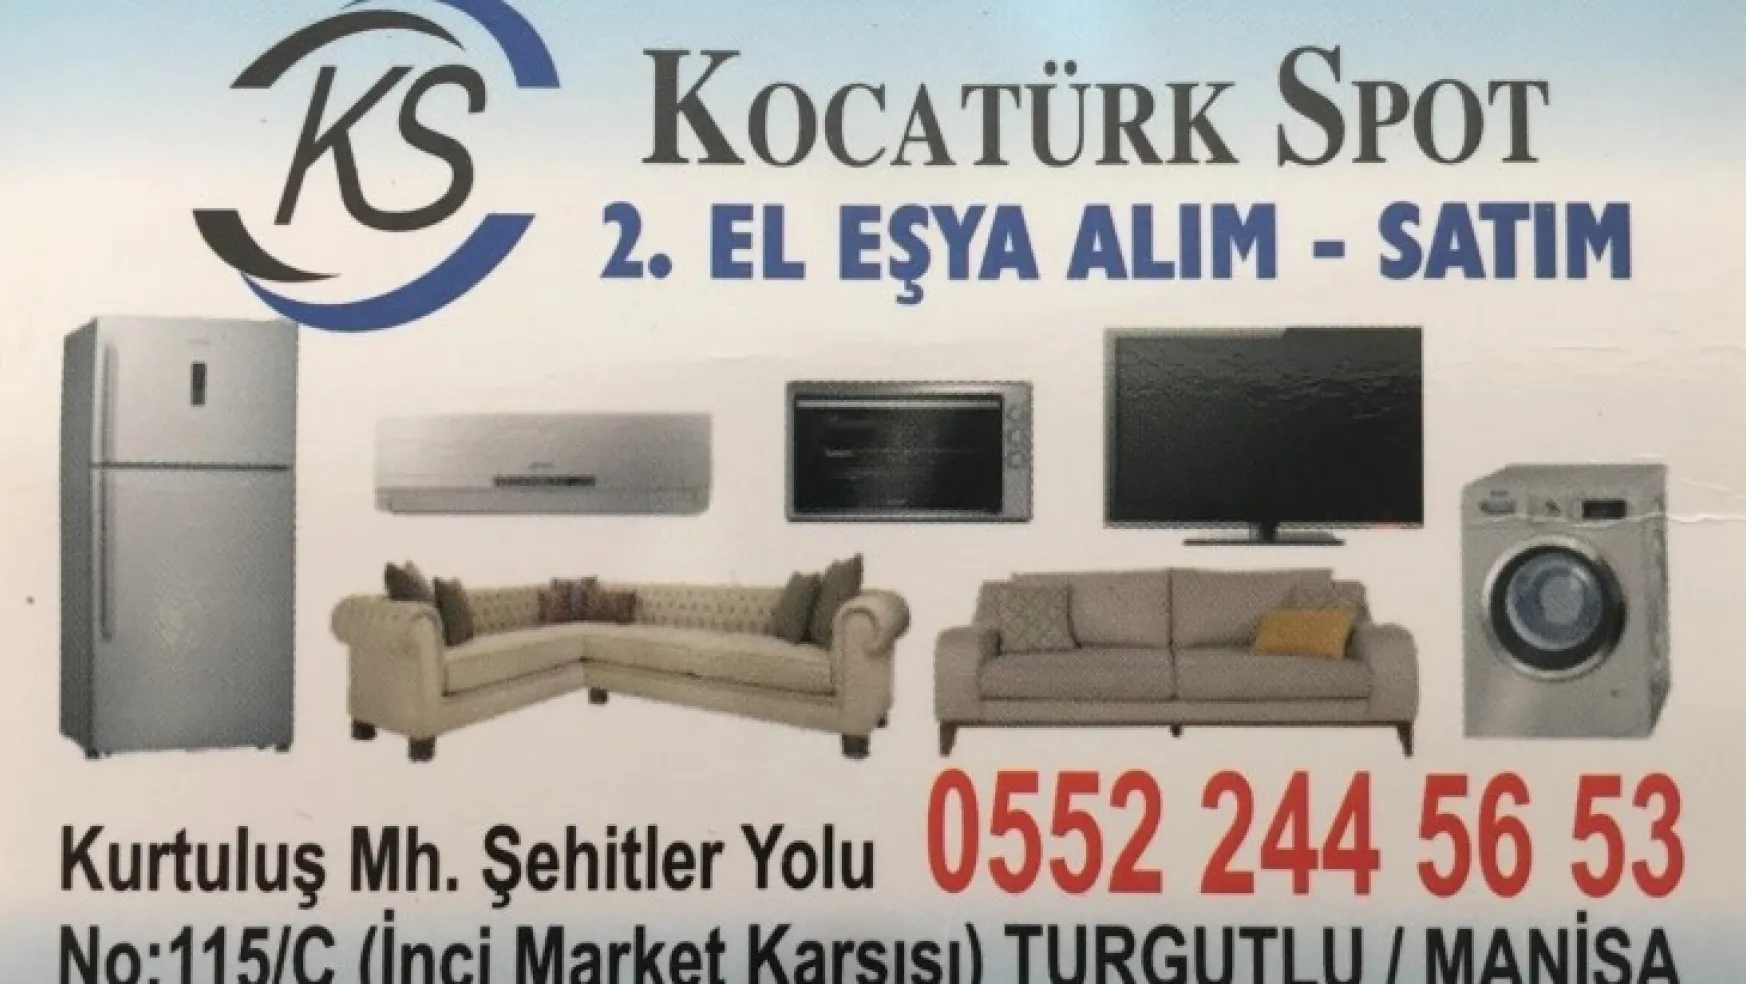 Kocatürk Spot Turgutlu'da kaliteli hizmetin adresi